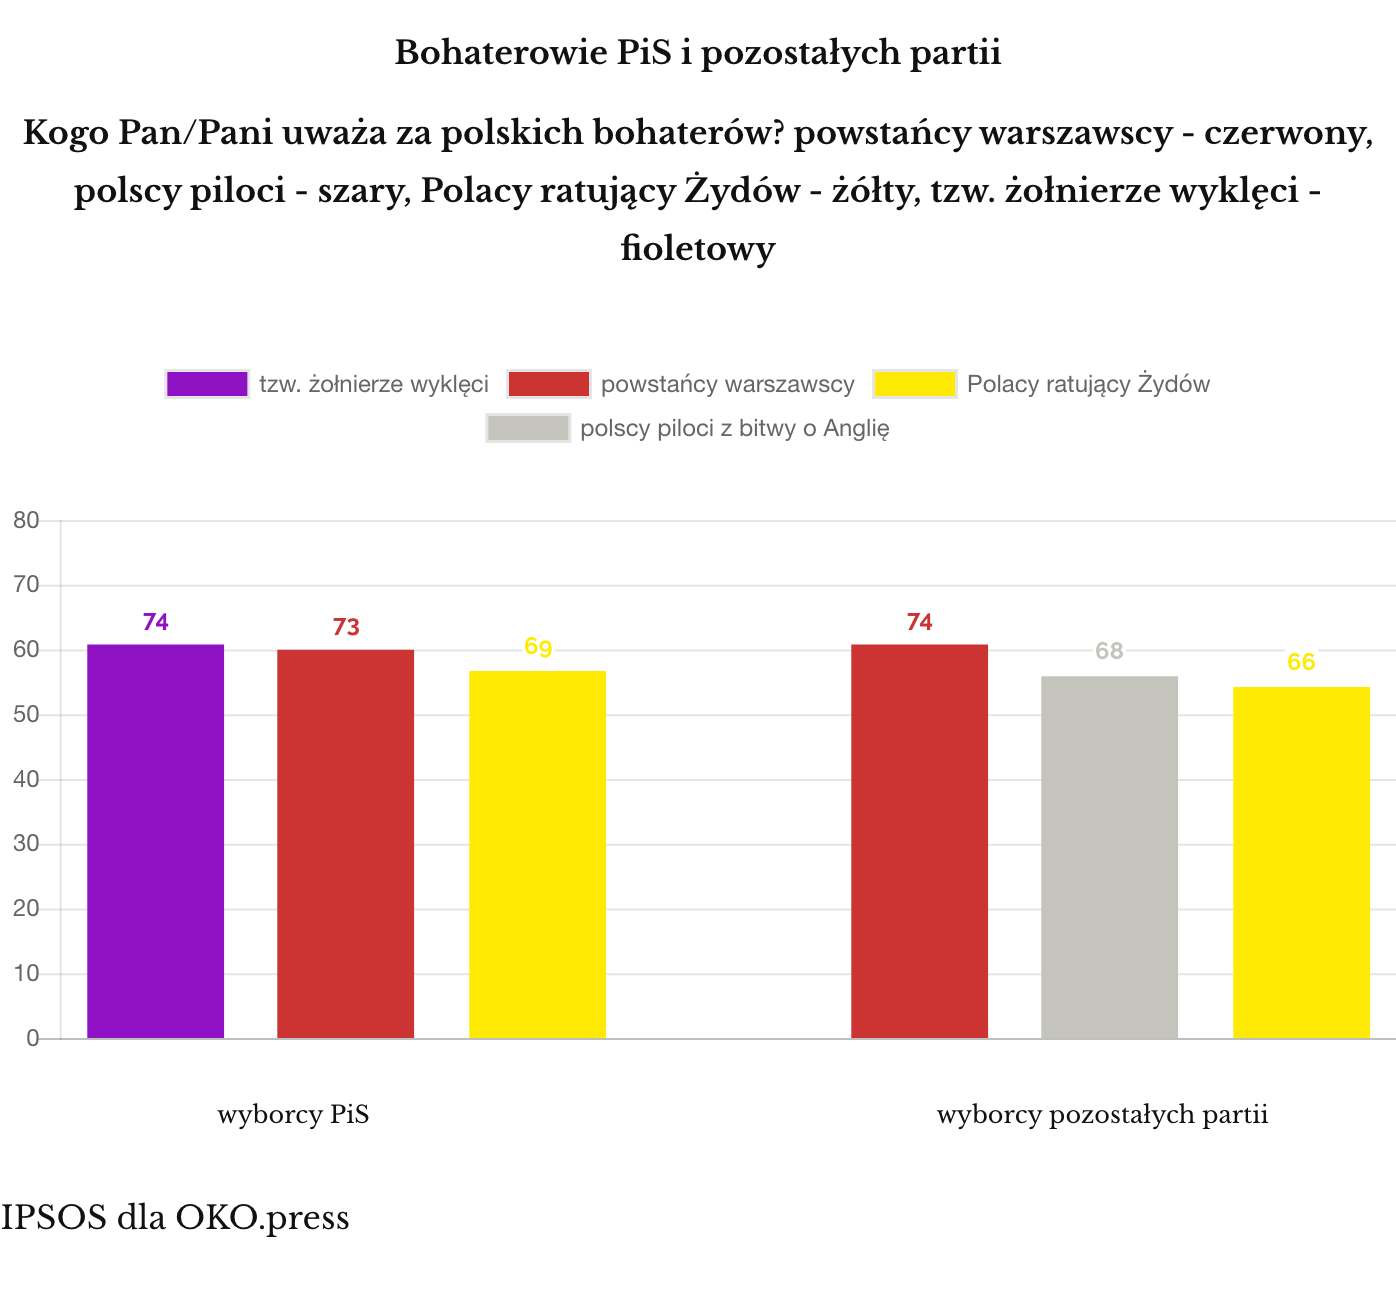 Polscy bohaterowie - PiS/reszta